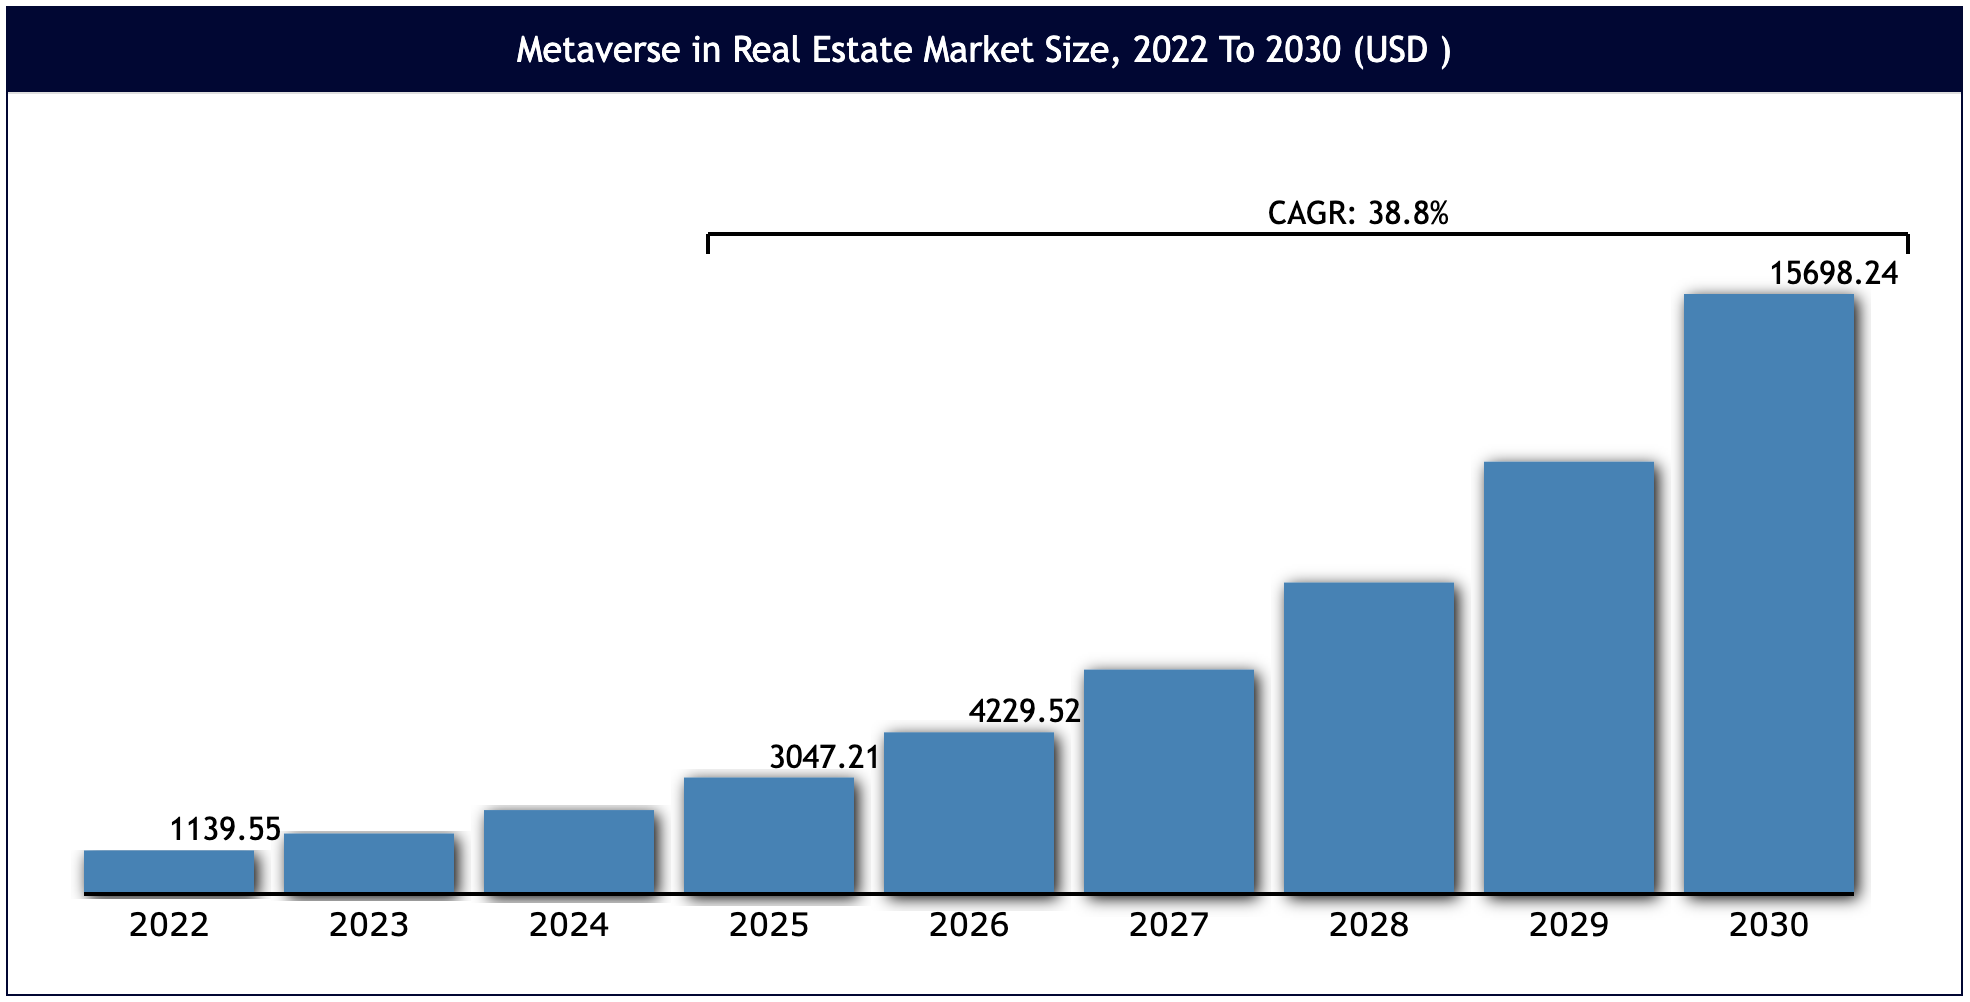 Metaverse real estate market